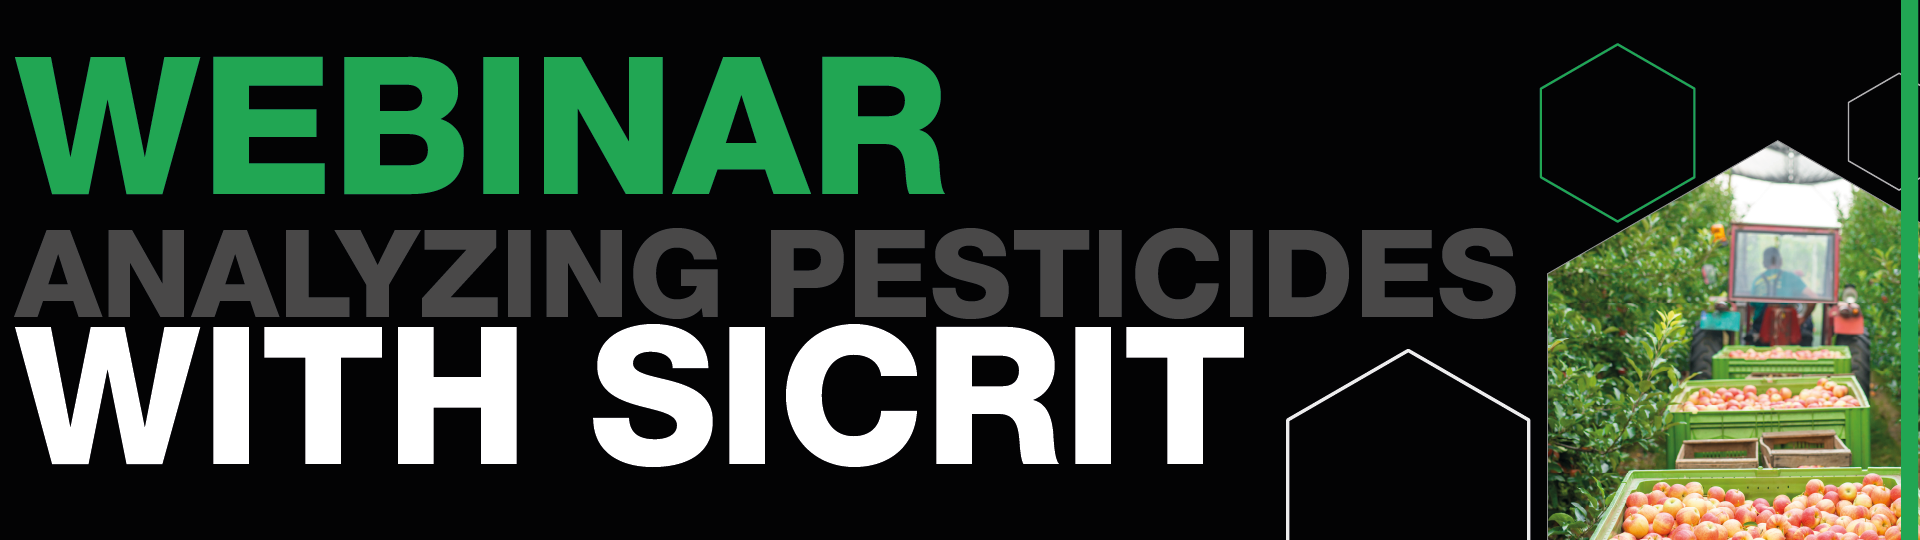 Pesticides Blog Groß 01